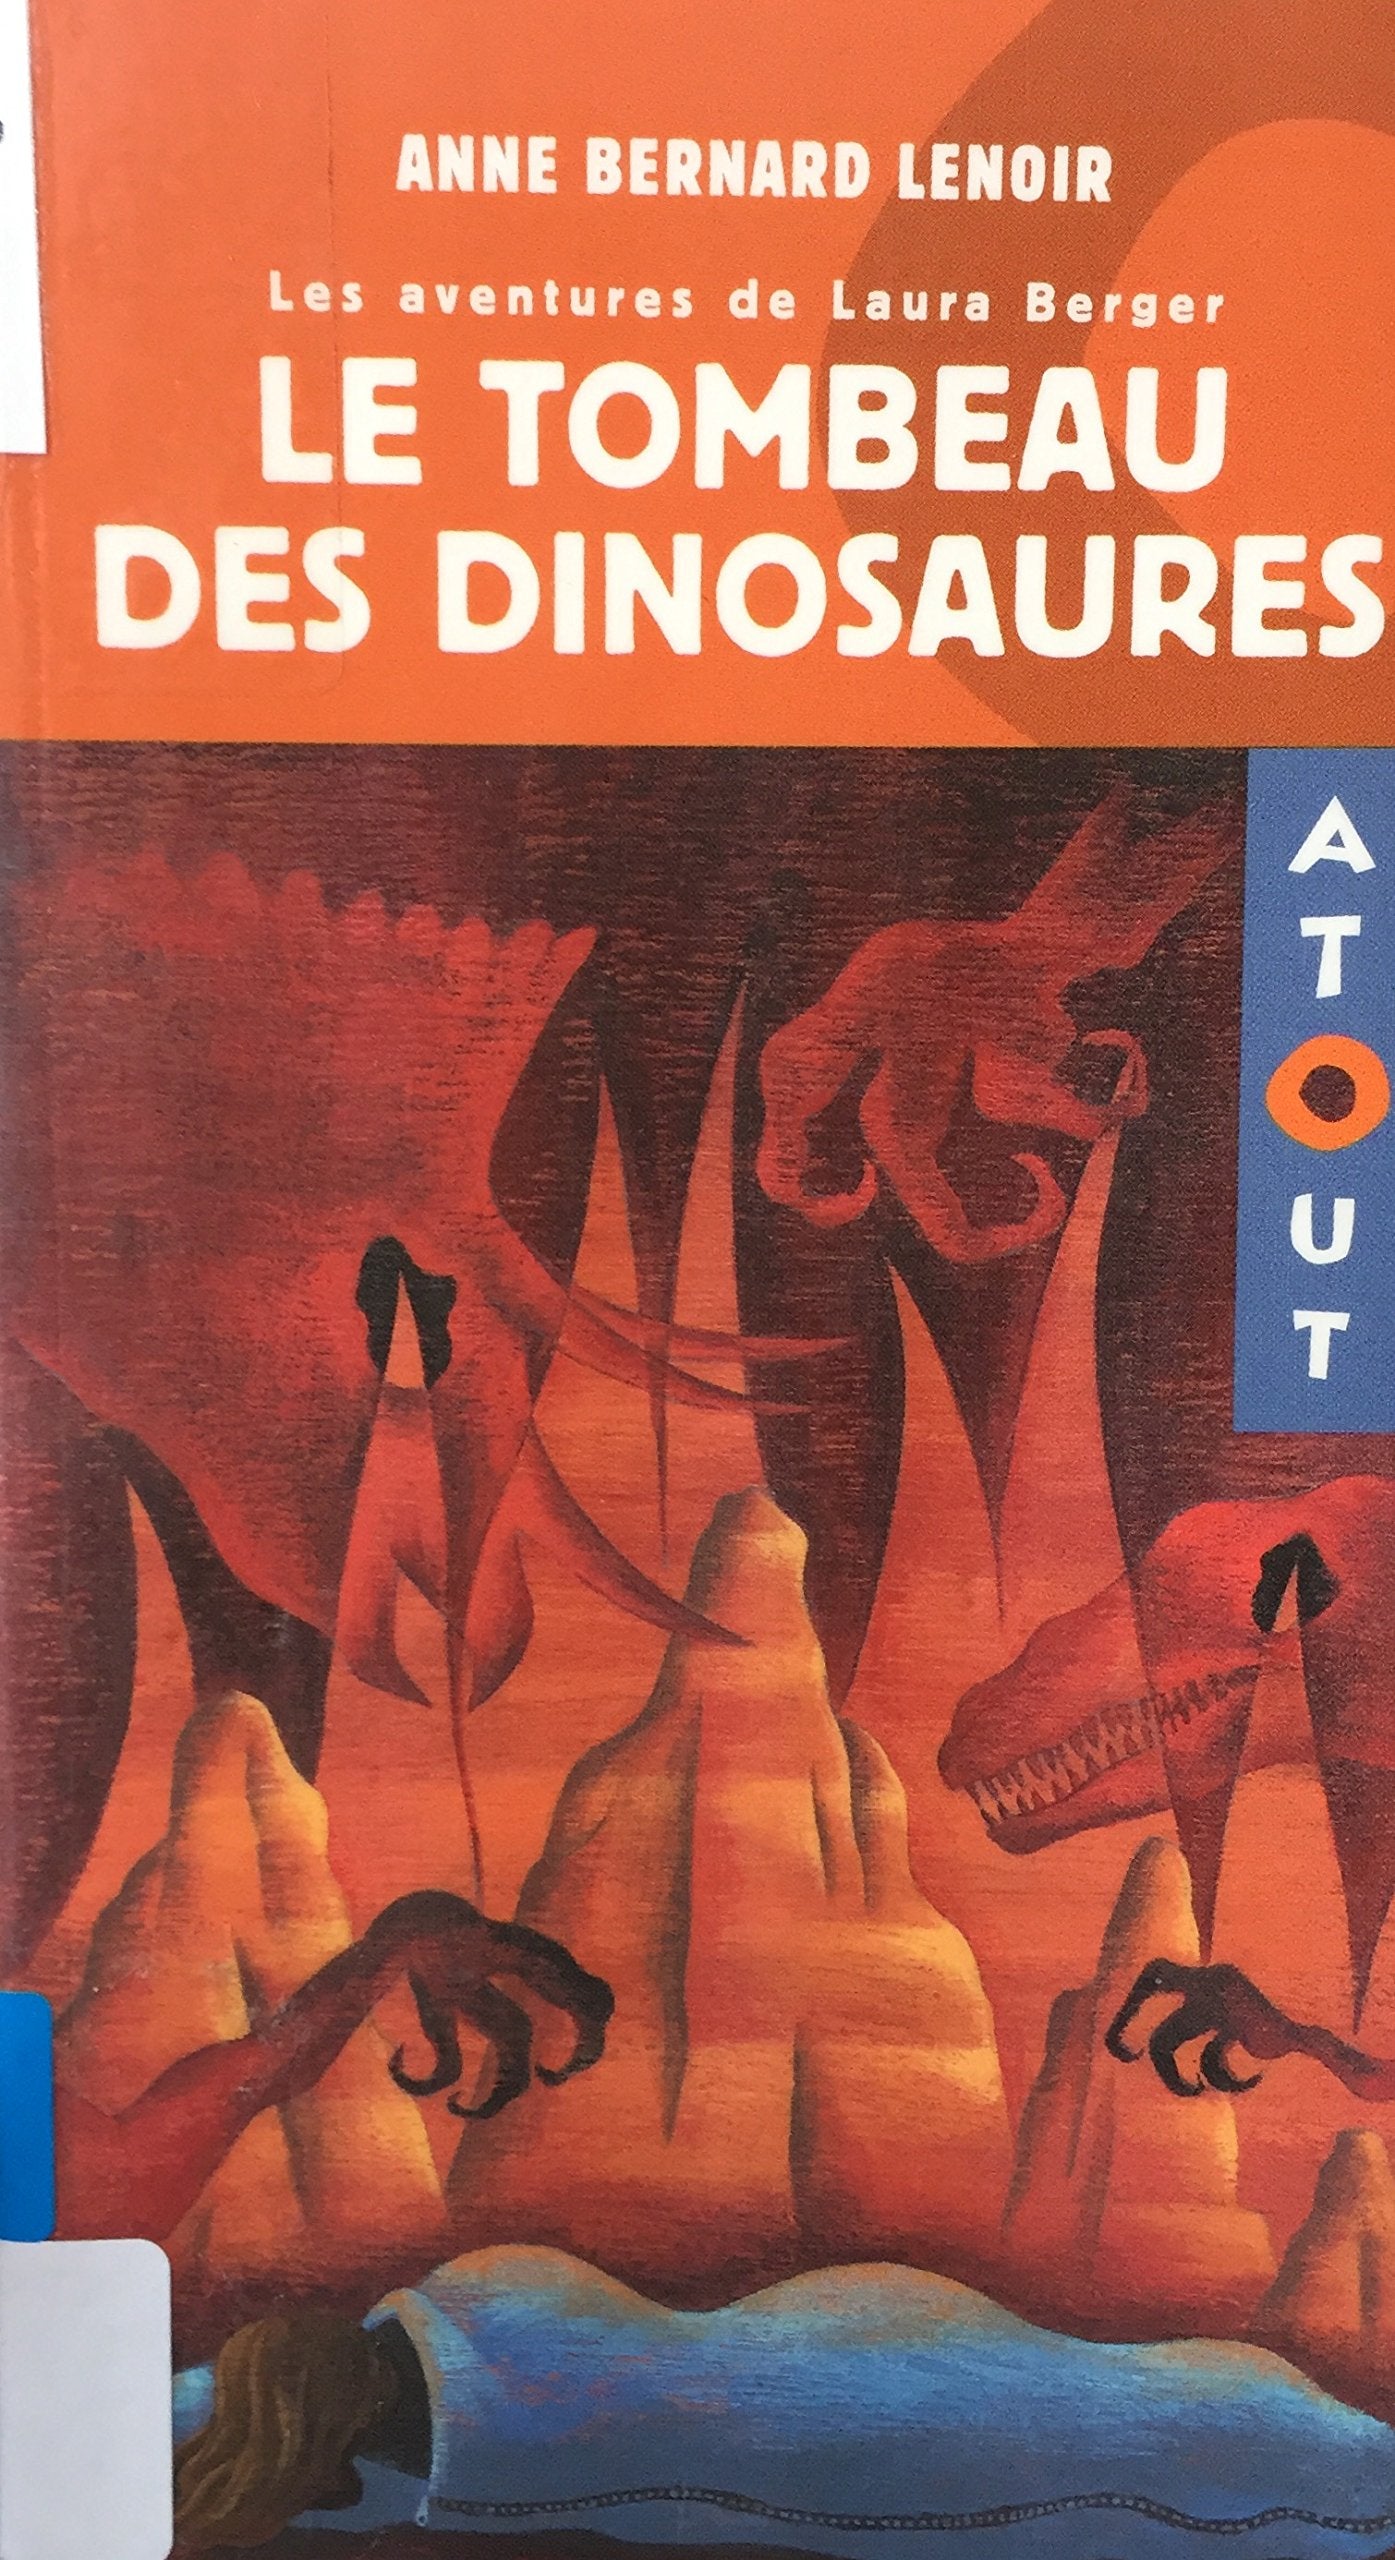 Livre ISBN 2896470115 Les aventures de Laura Berger : Le tombeau des dinosaures (Anne Bernard Lenoir)